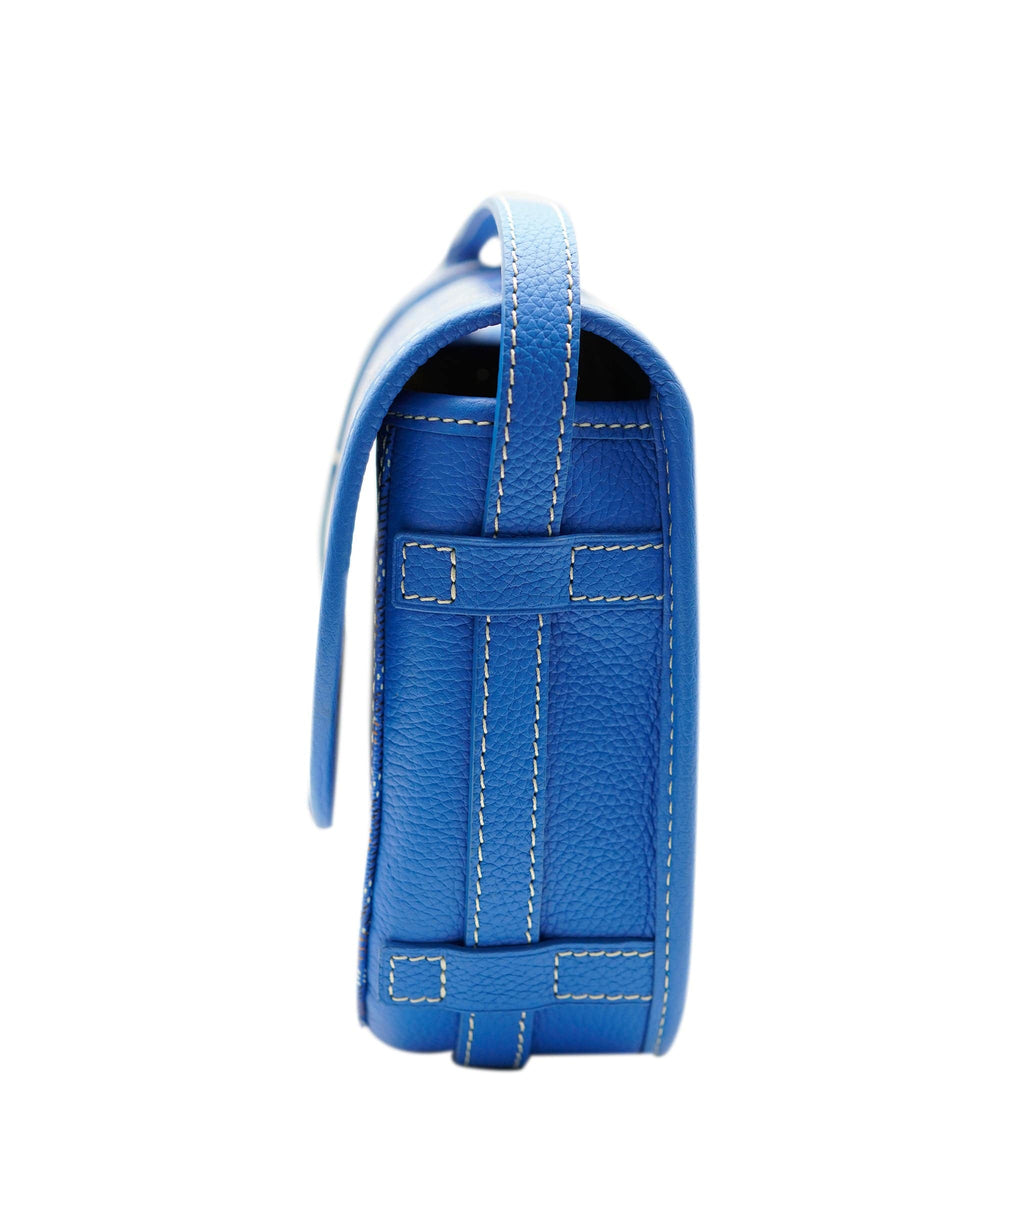 Goyard Belvedere PM Messenger Bag BLUE 🥶